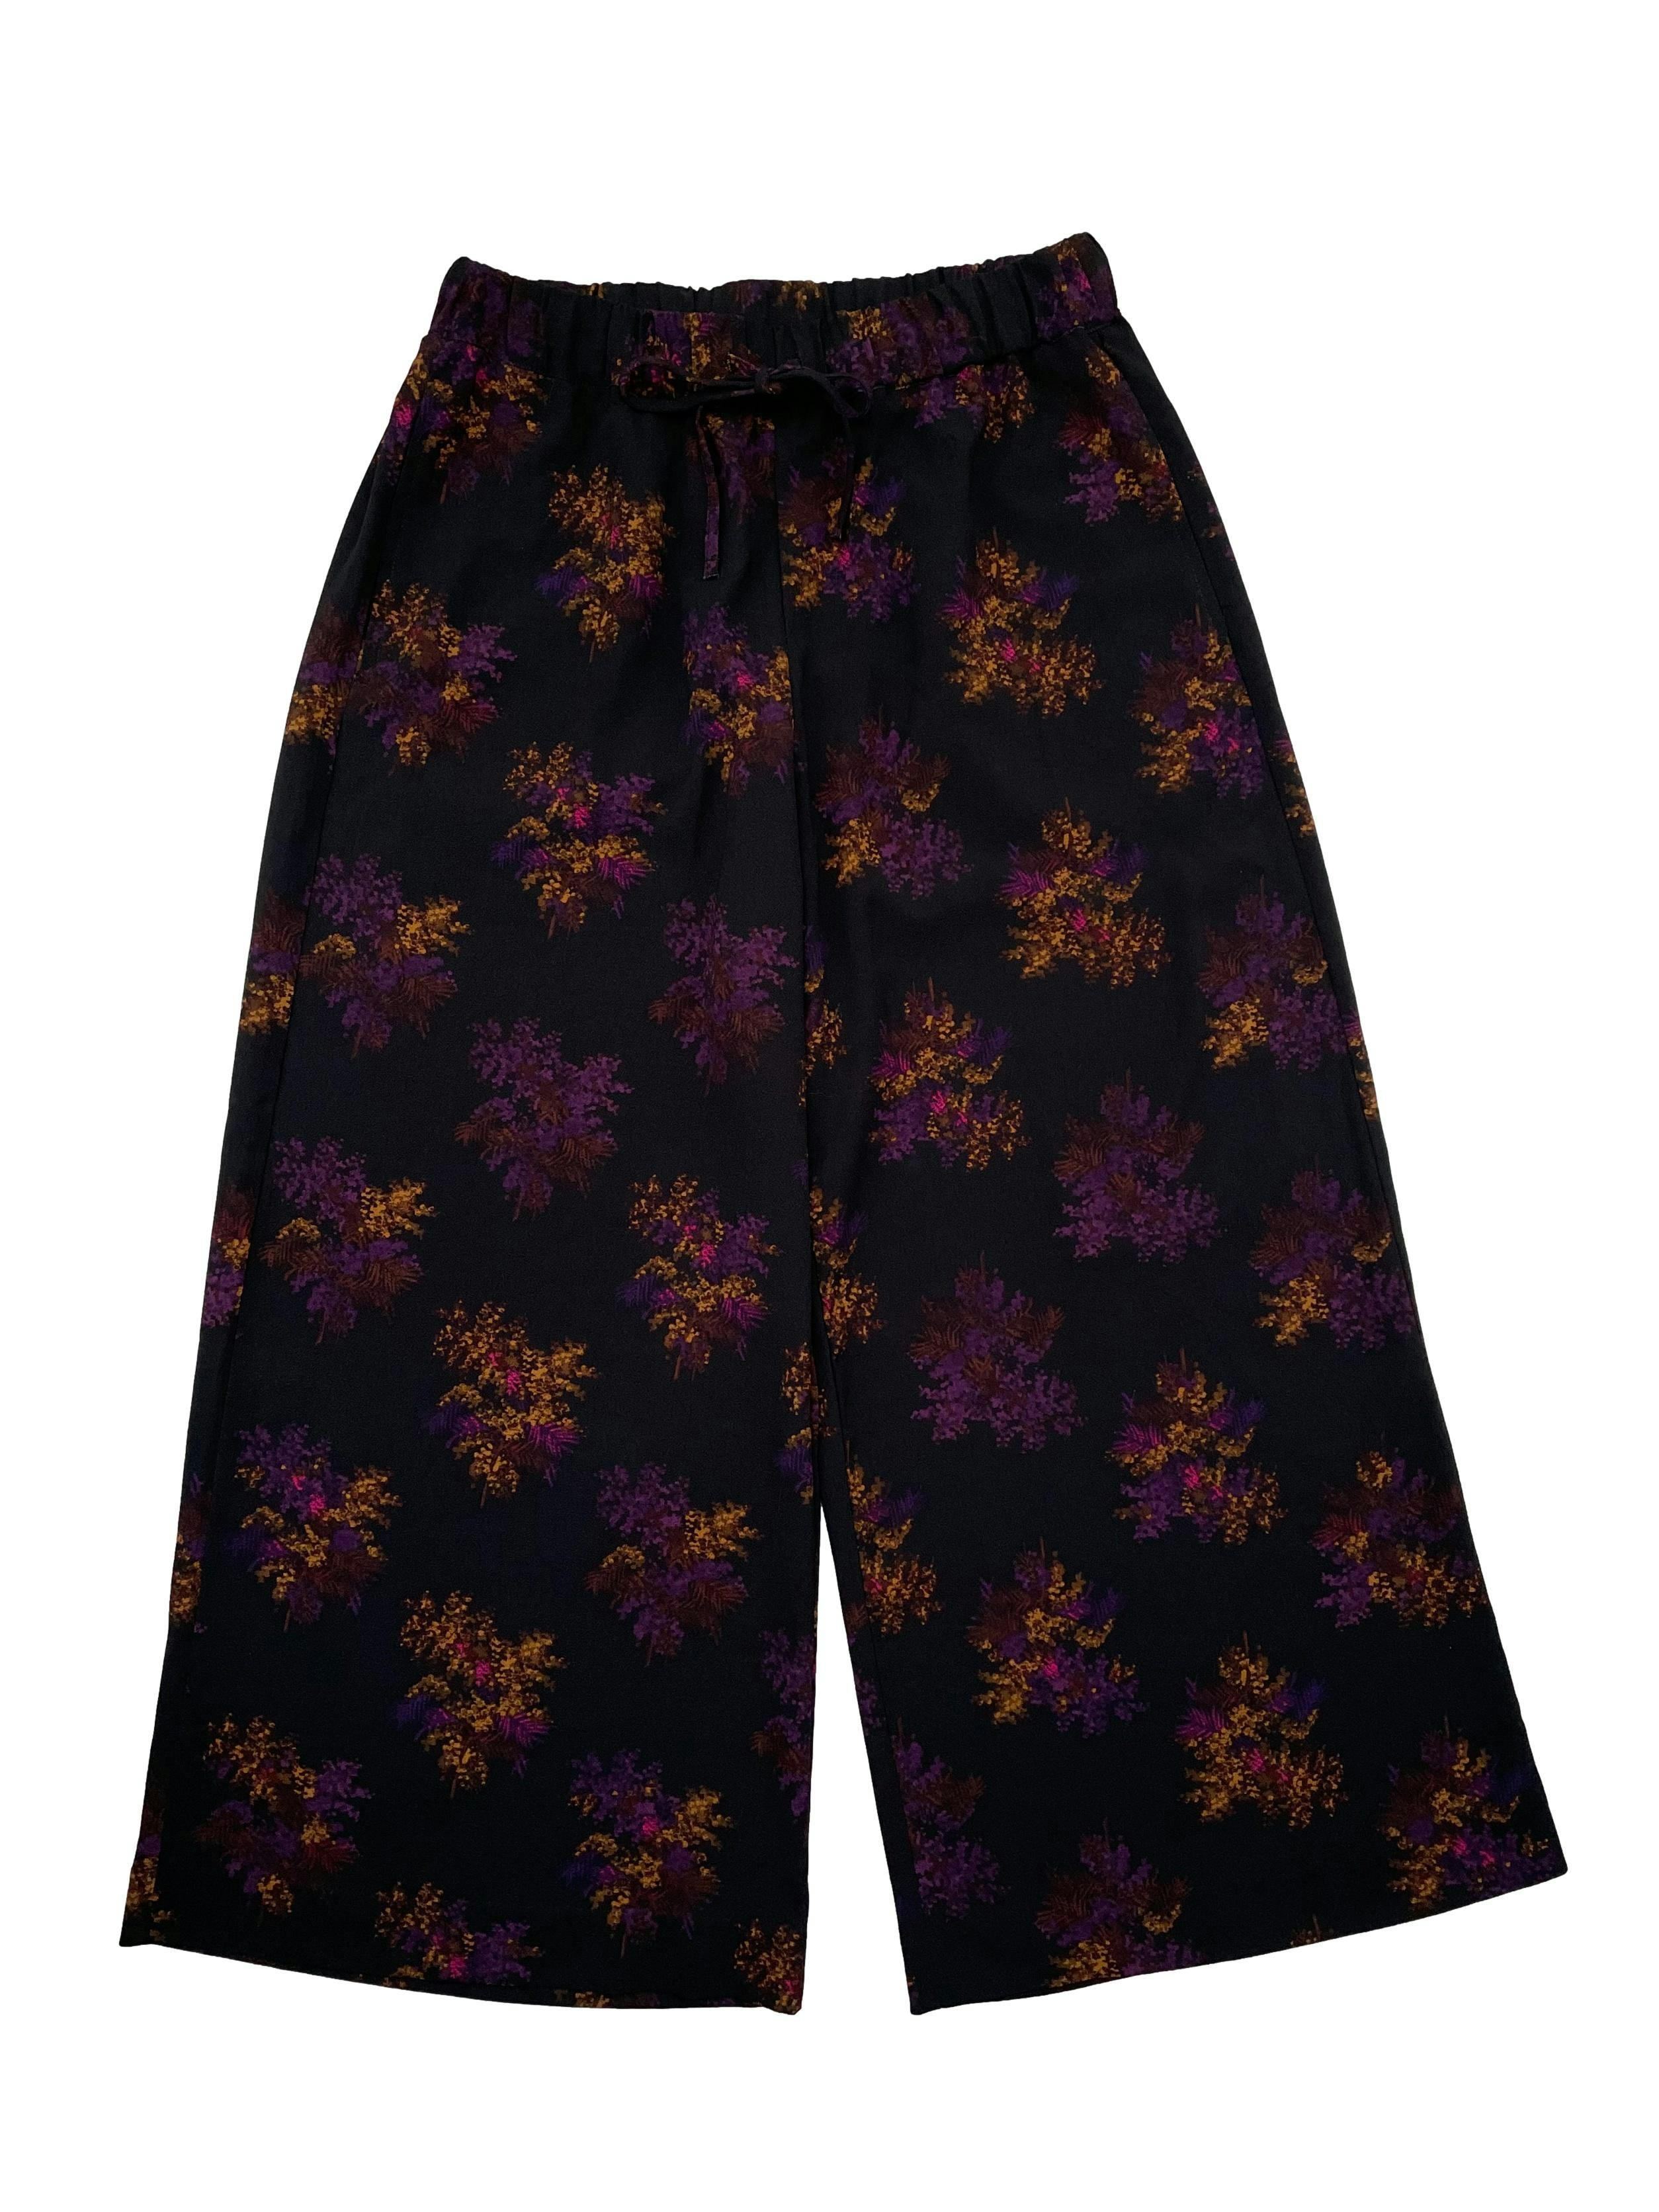 Culotte H&M de crepé negro con flores moradas y amarillas, pretina elástica, bolsillos laterales. Cintura 72cm Largo 90cm